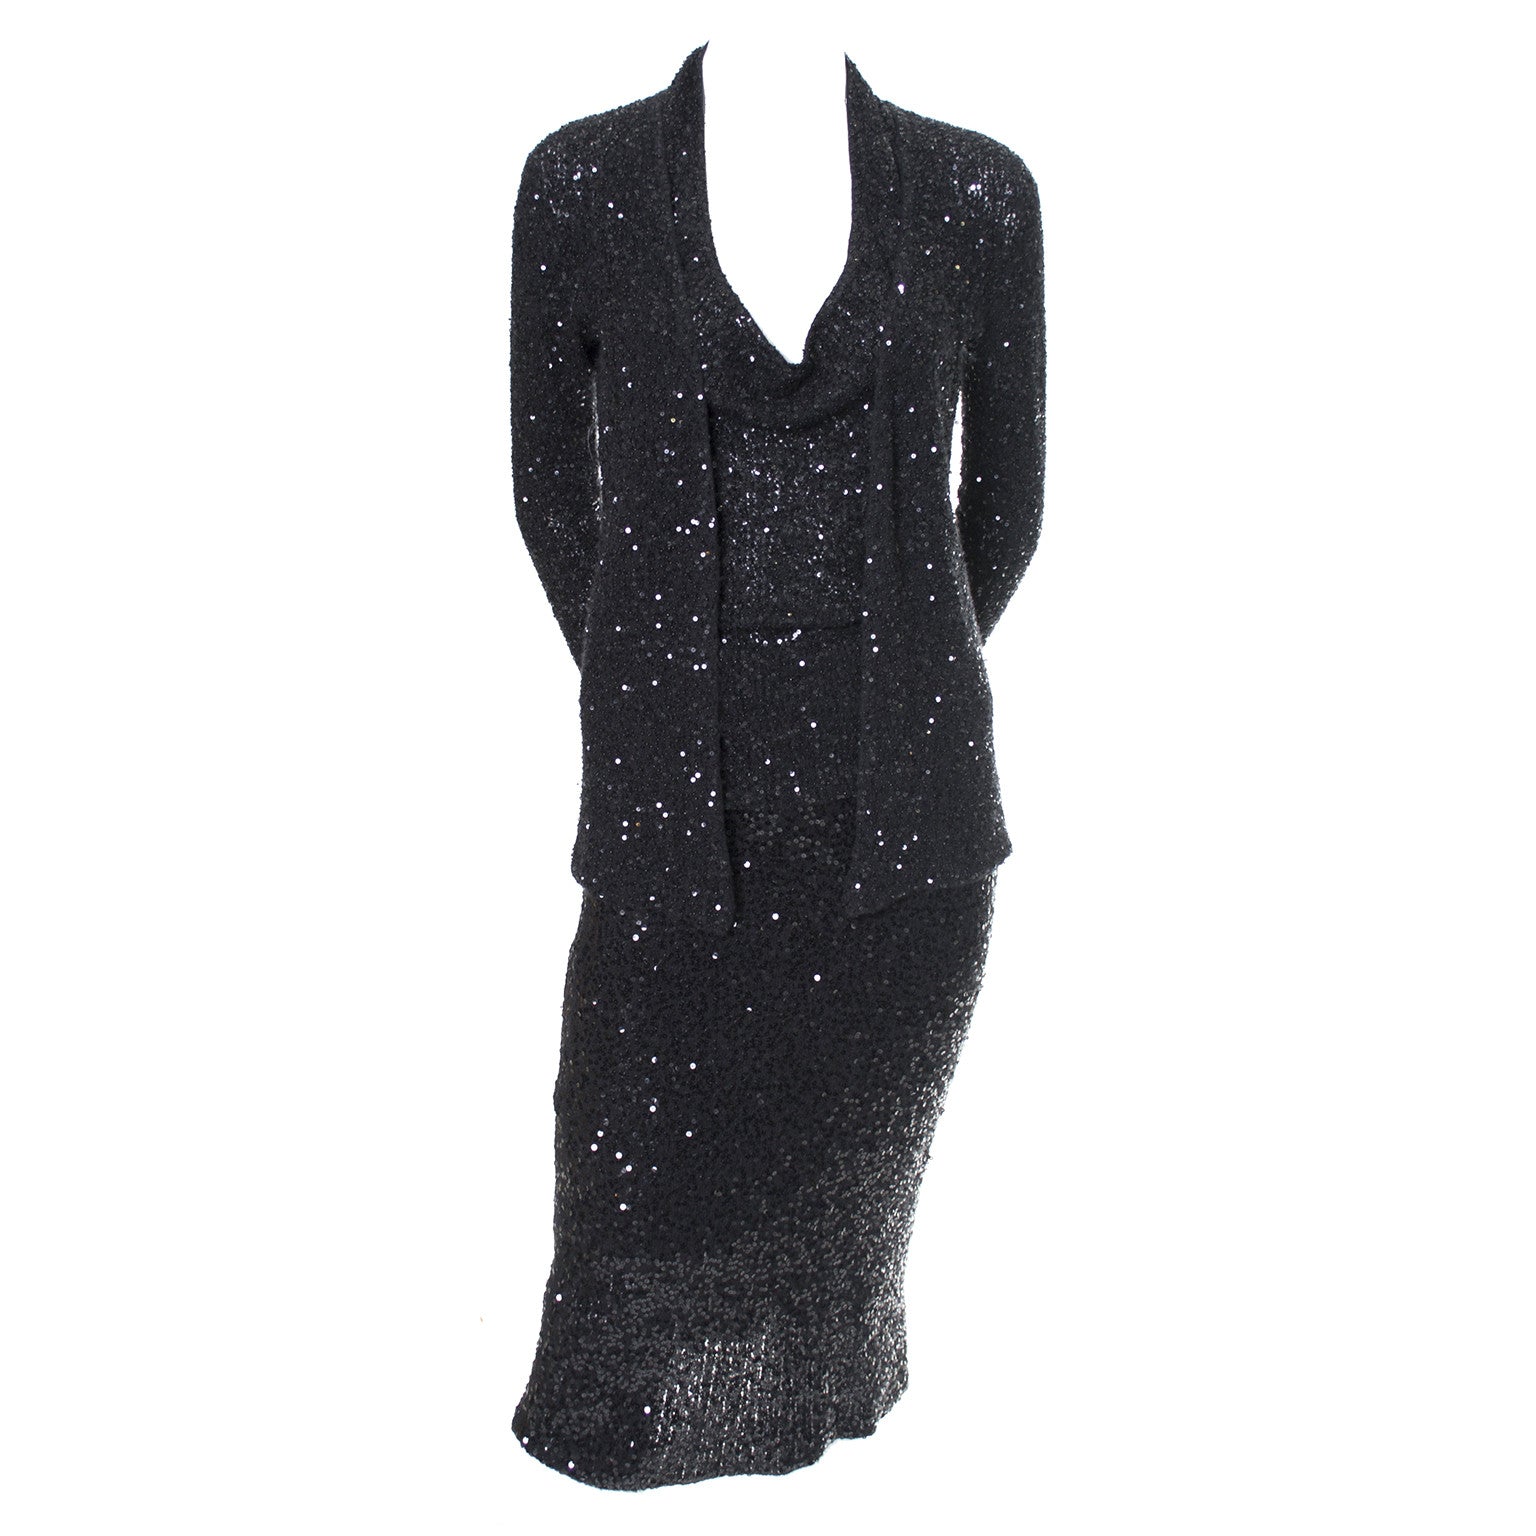 Donna Karan 1990s Size 4 Silver Grecian Metallic Strapless Vintage Silk 90s Gown